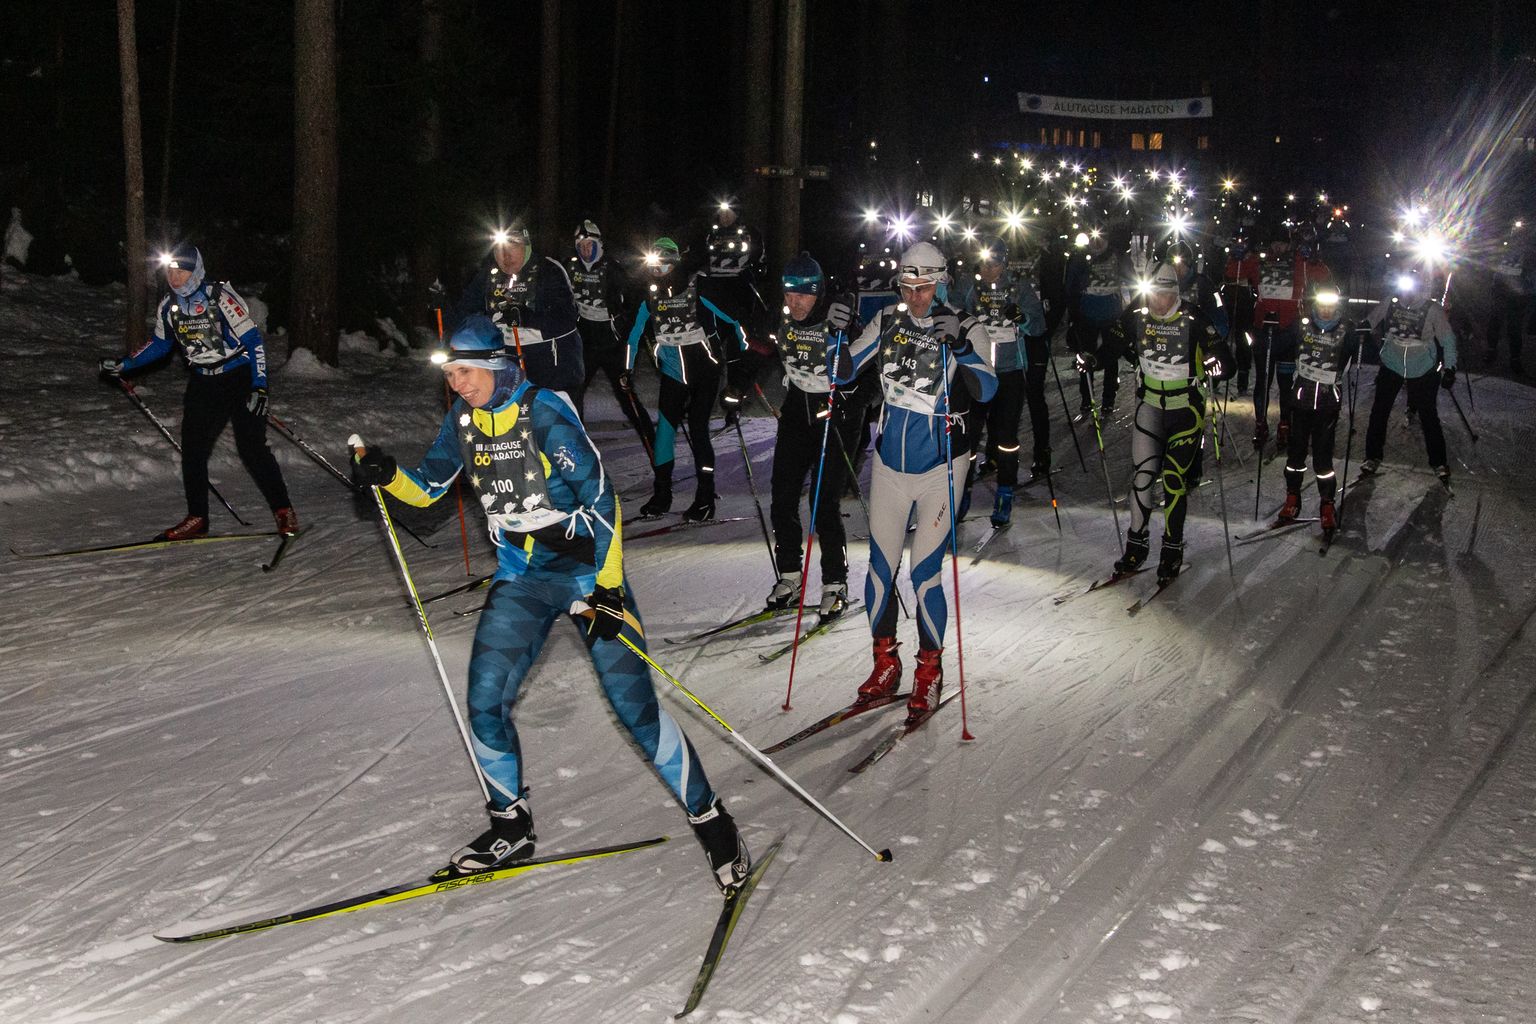 Öömaratonil sõidavad suusatajad vaid pealambi valgel. Mitmel korral on osalejate seas olnud ka president Kersti Kaljulaid.